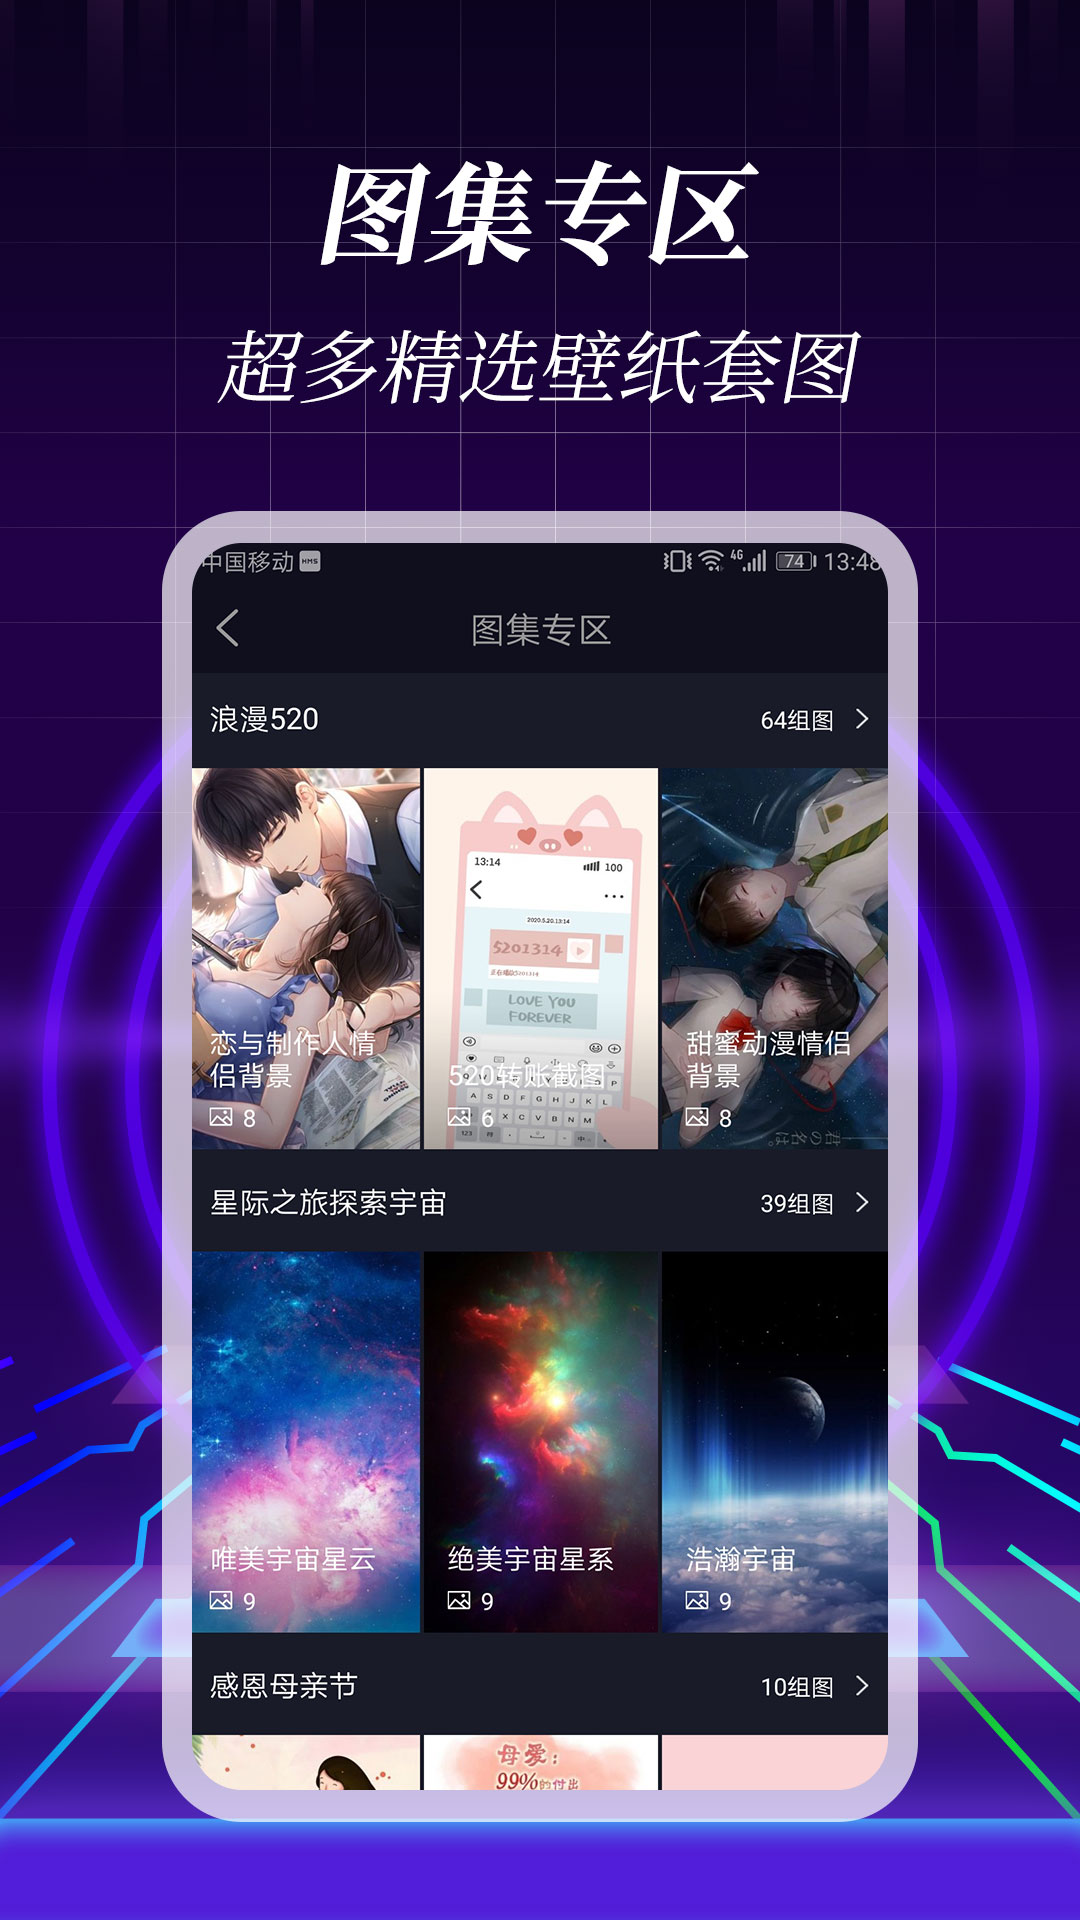 3d壁纸官方新版本 安卓ios版下载 应用宝官网